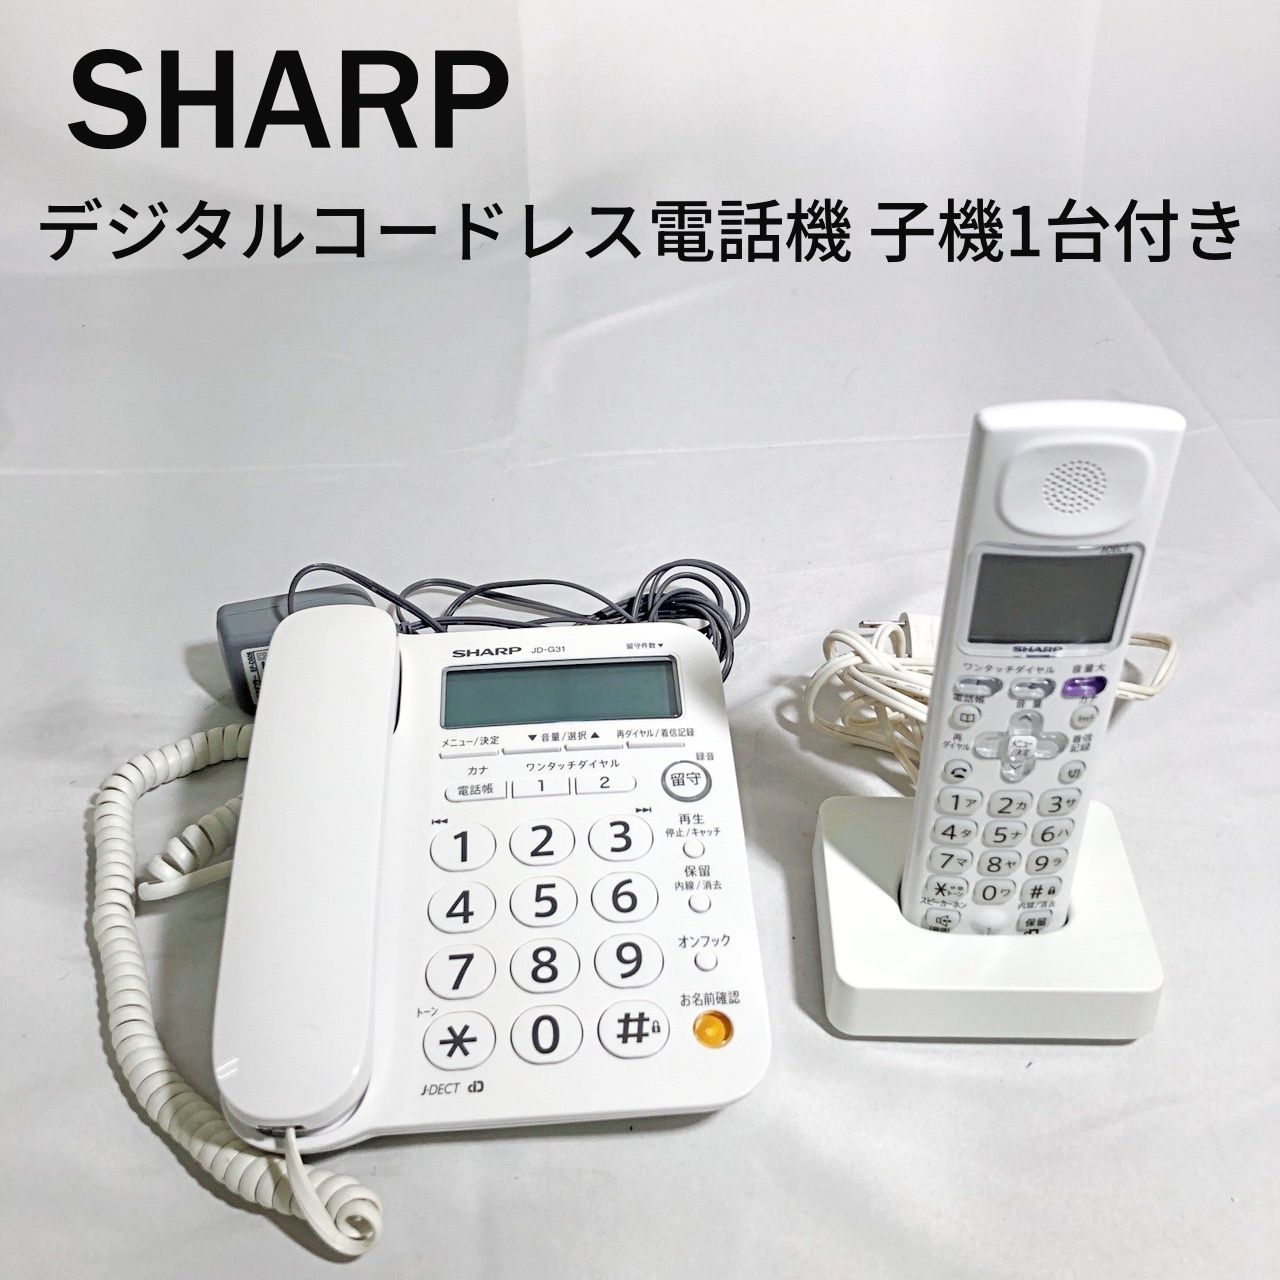 シャープ デジタル コードレス 電話機 子機 1台付き JD-G31CL